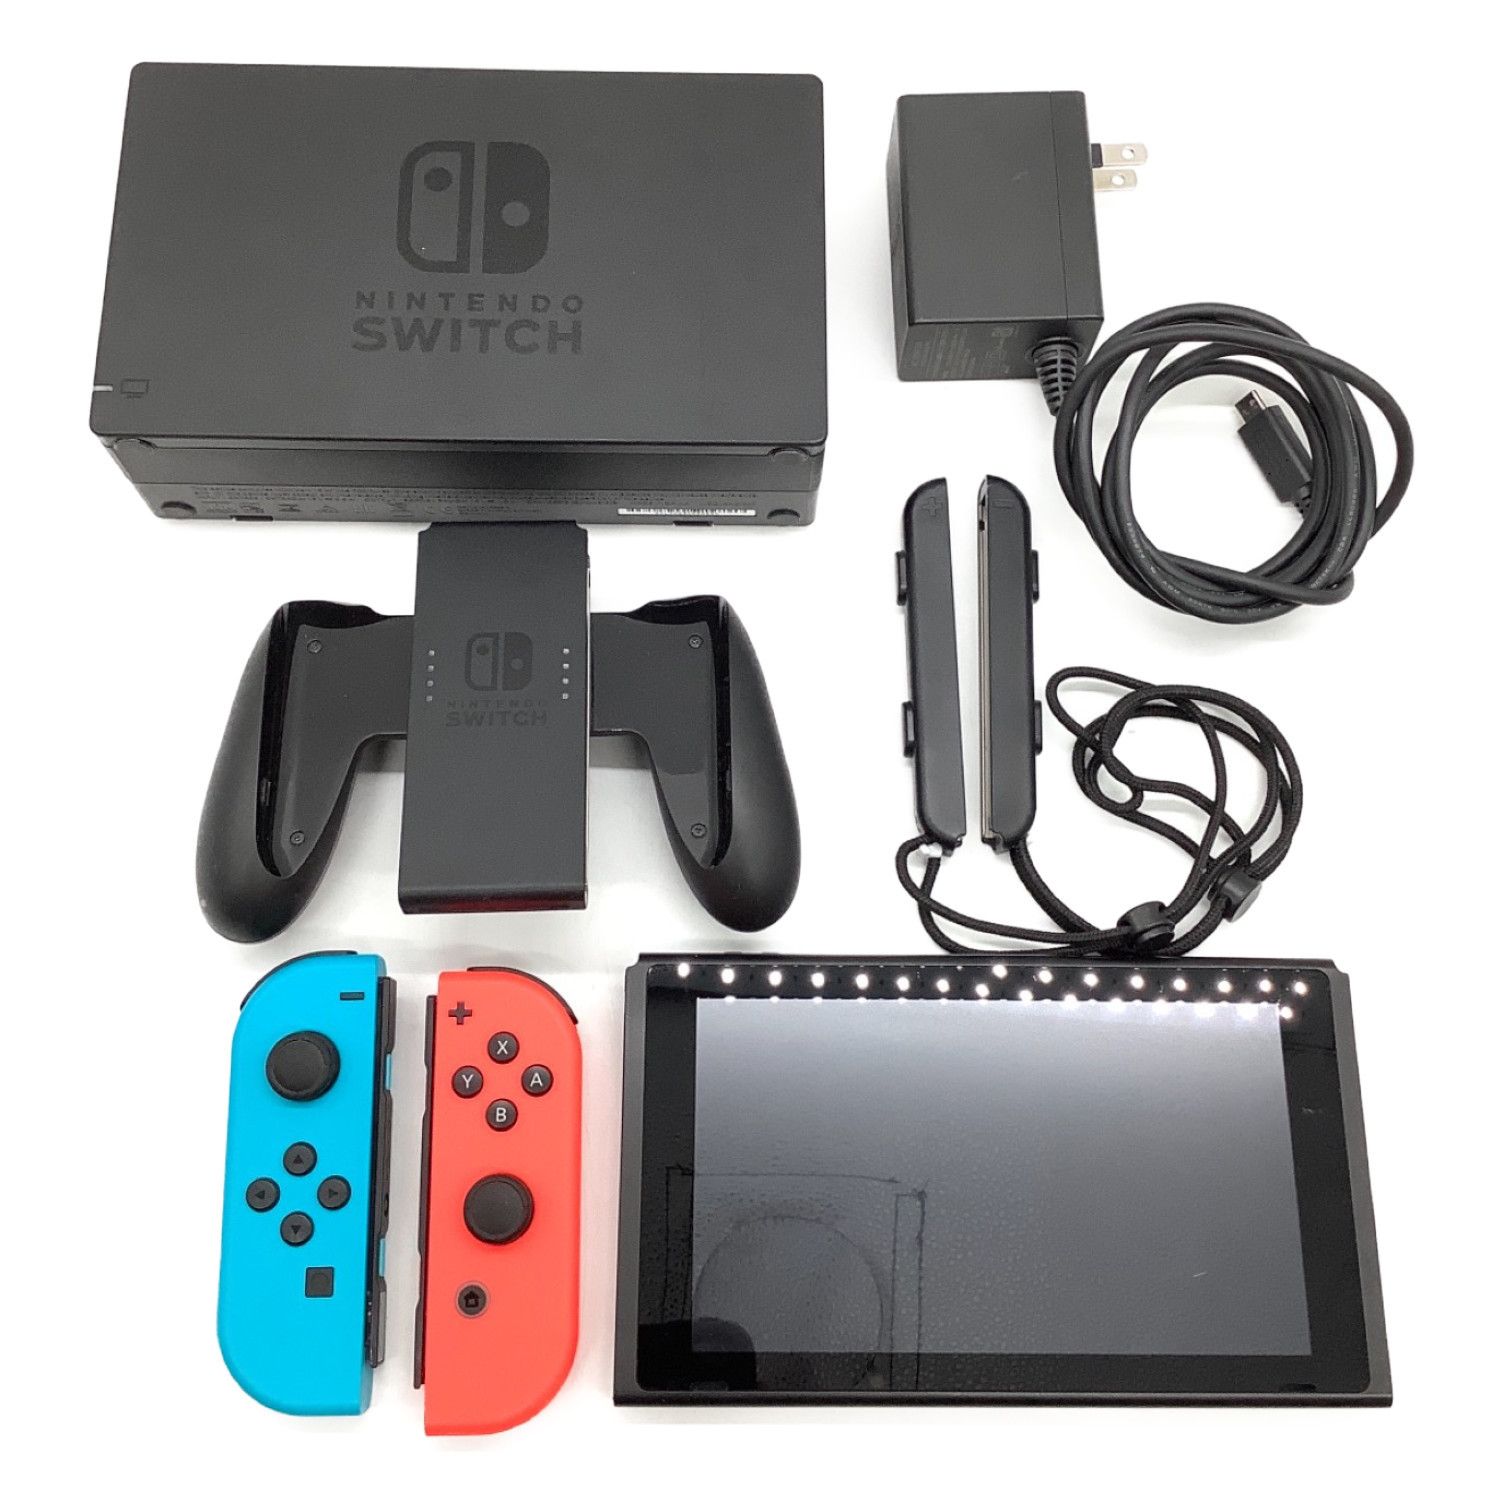 Nintendo (ニンテンドウ) Nintendo Switch 2019年モデル HAC-001 32GB 